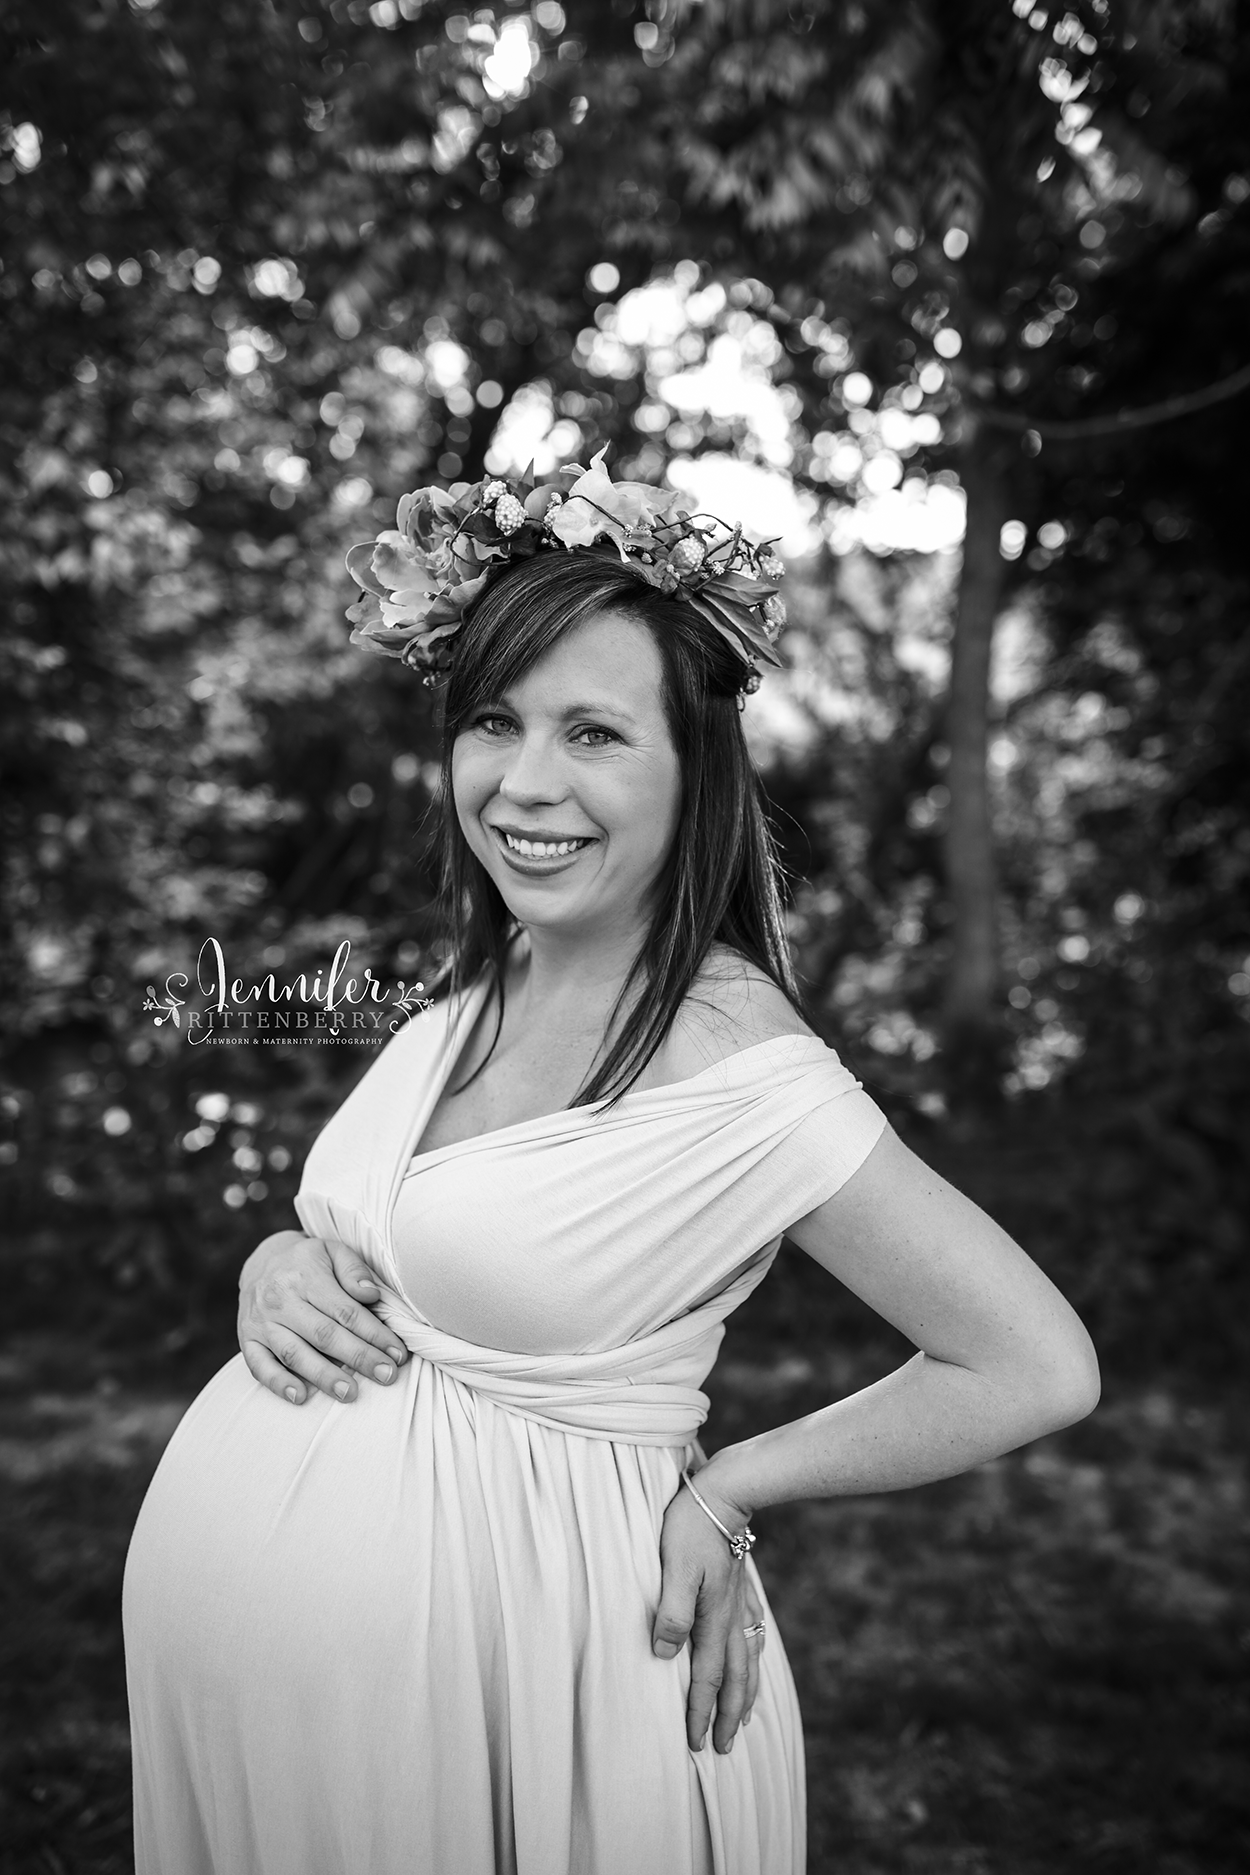 Louisville KY Maternity Photographer | Jennifer Rittenberry Photography | www.jlritt.com